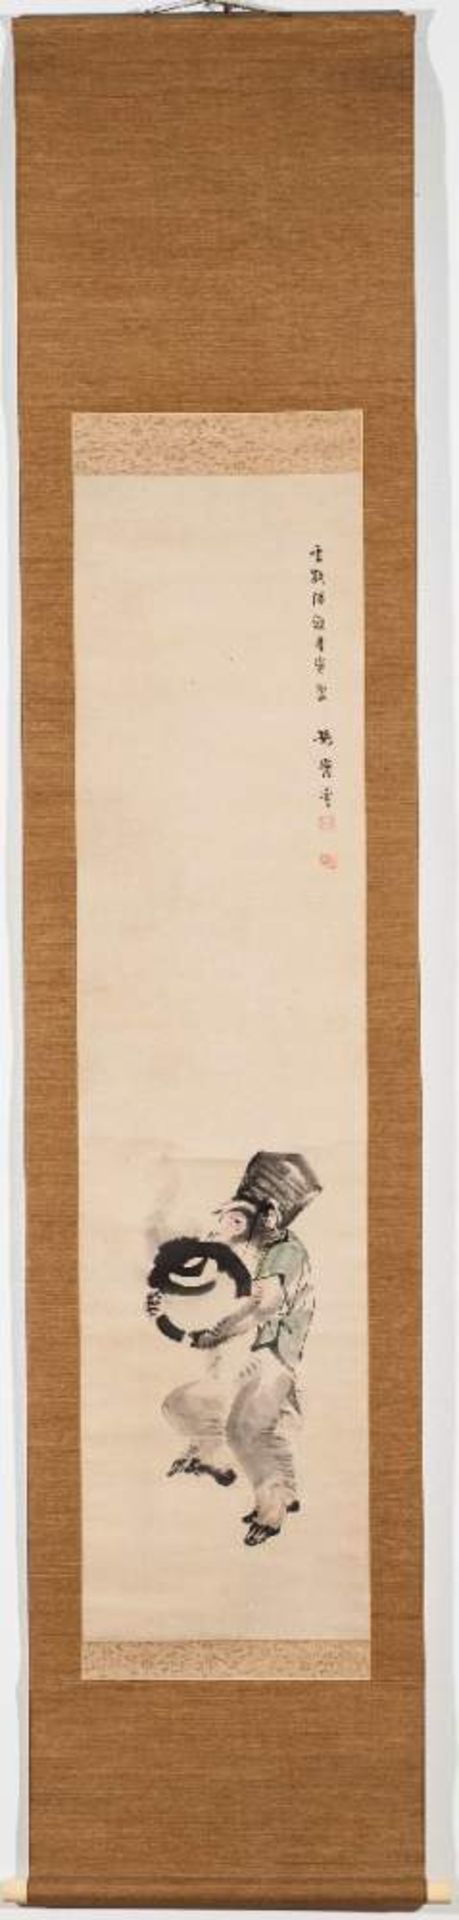 KONO BAIREI (1844-1895): AFFE ALS PRIESTERTusche und Farben auf Papier. Japan, 1. Hälfte 20. Jh.